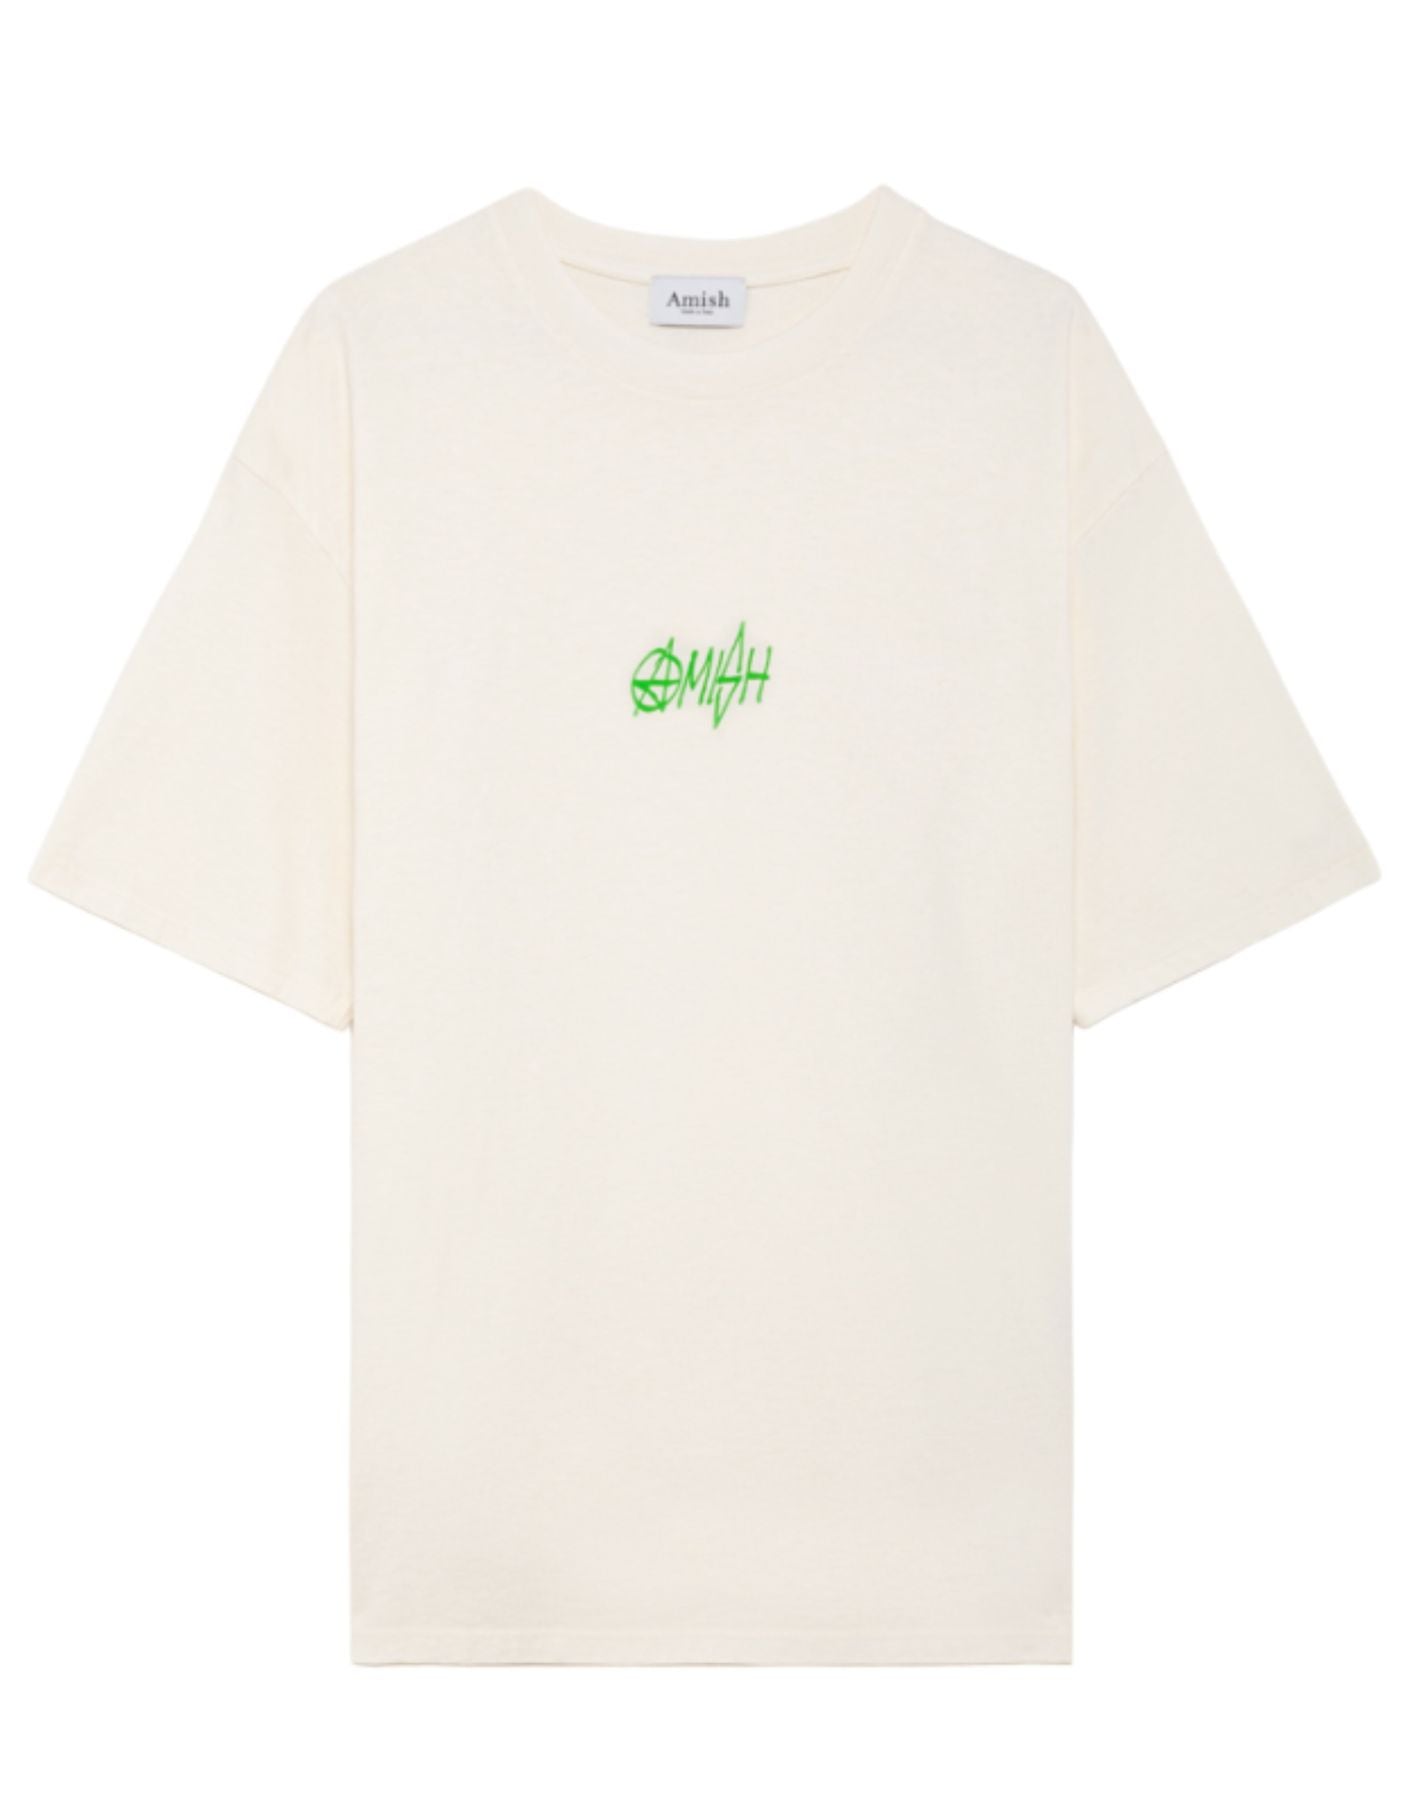 티셔츠 맨 AMU078CE681772 흰색 Amish